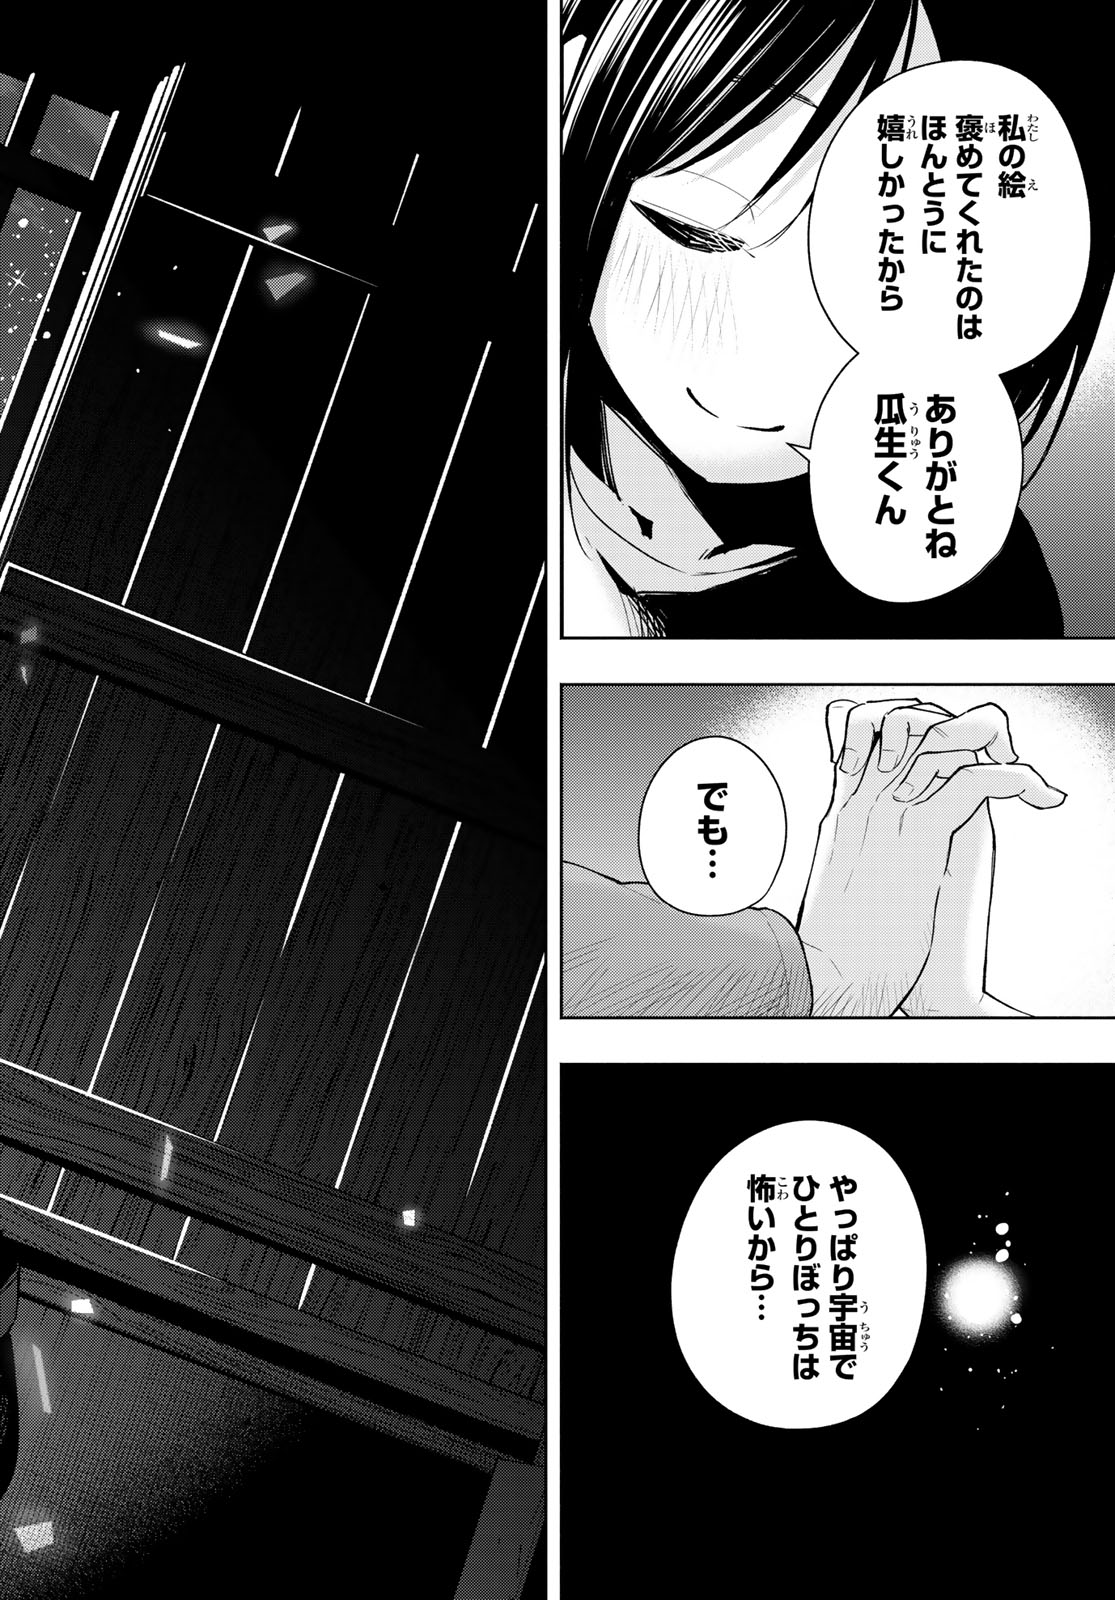 Amagami-san Chi no Enmusubi - Chapter 139 - Page 18